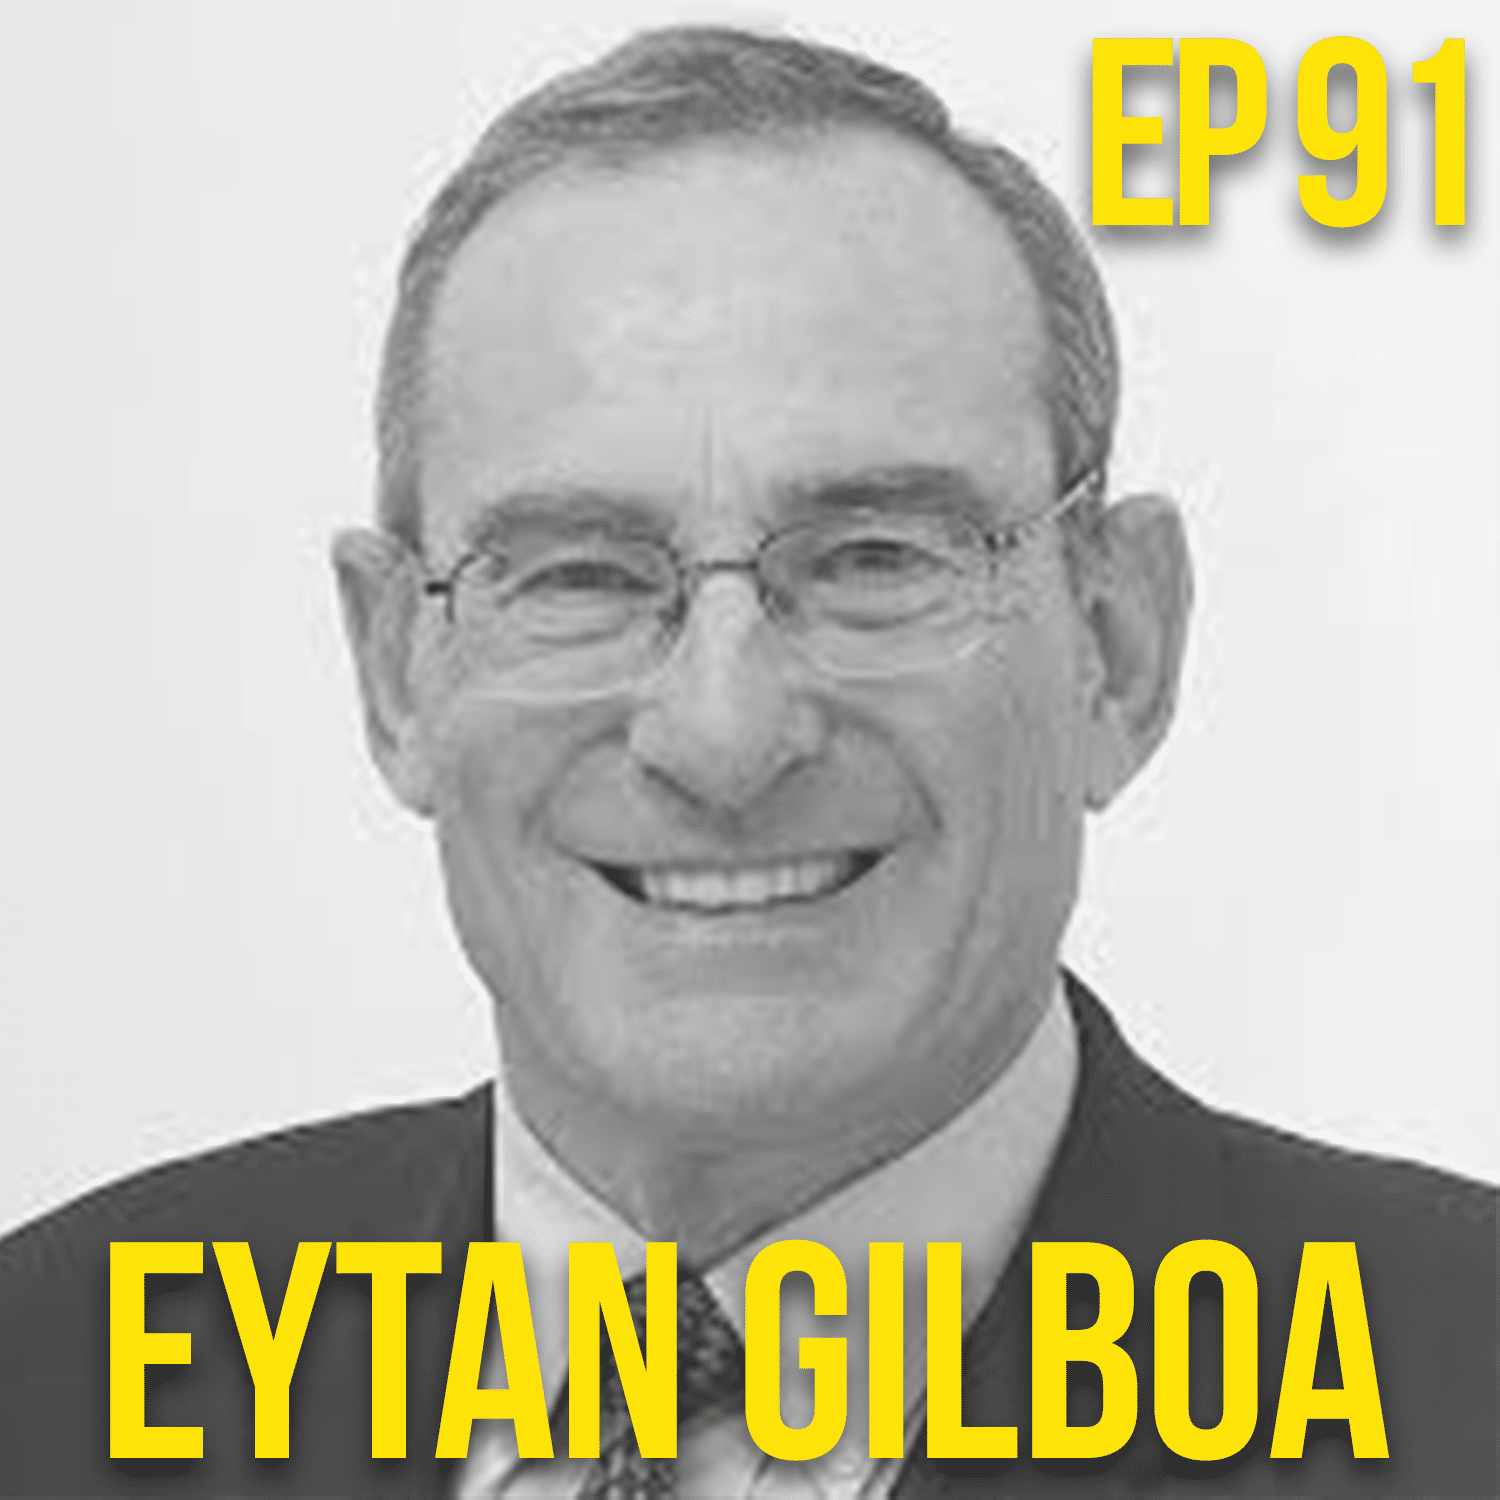 Eytan Gilboa